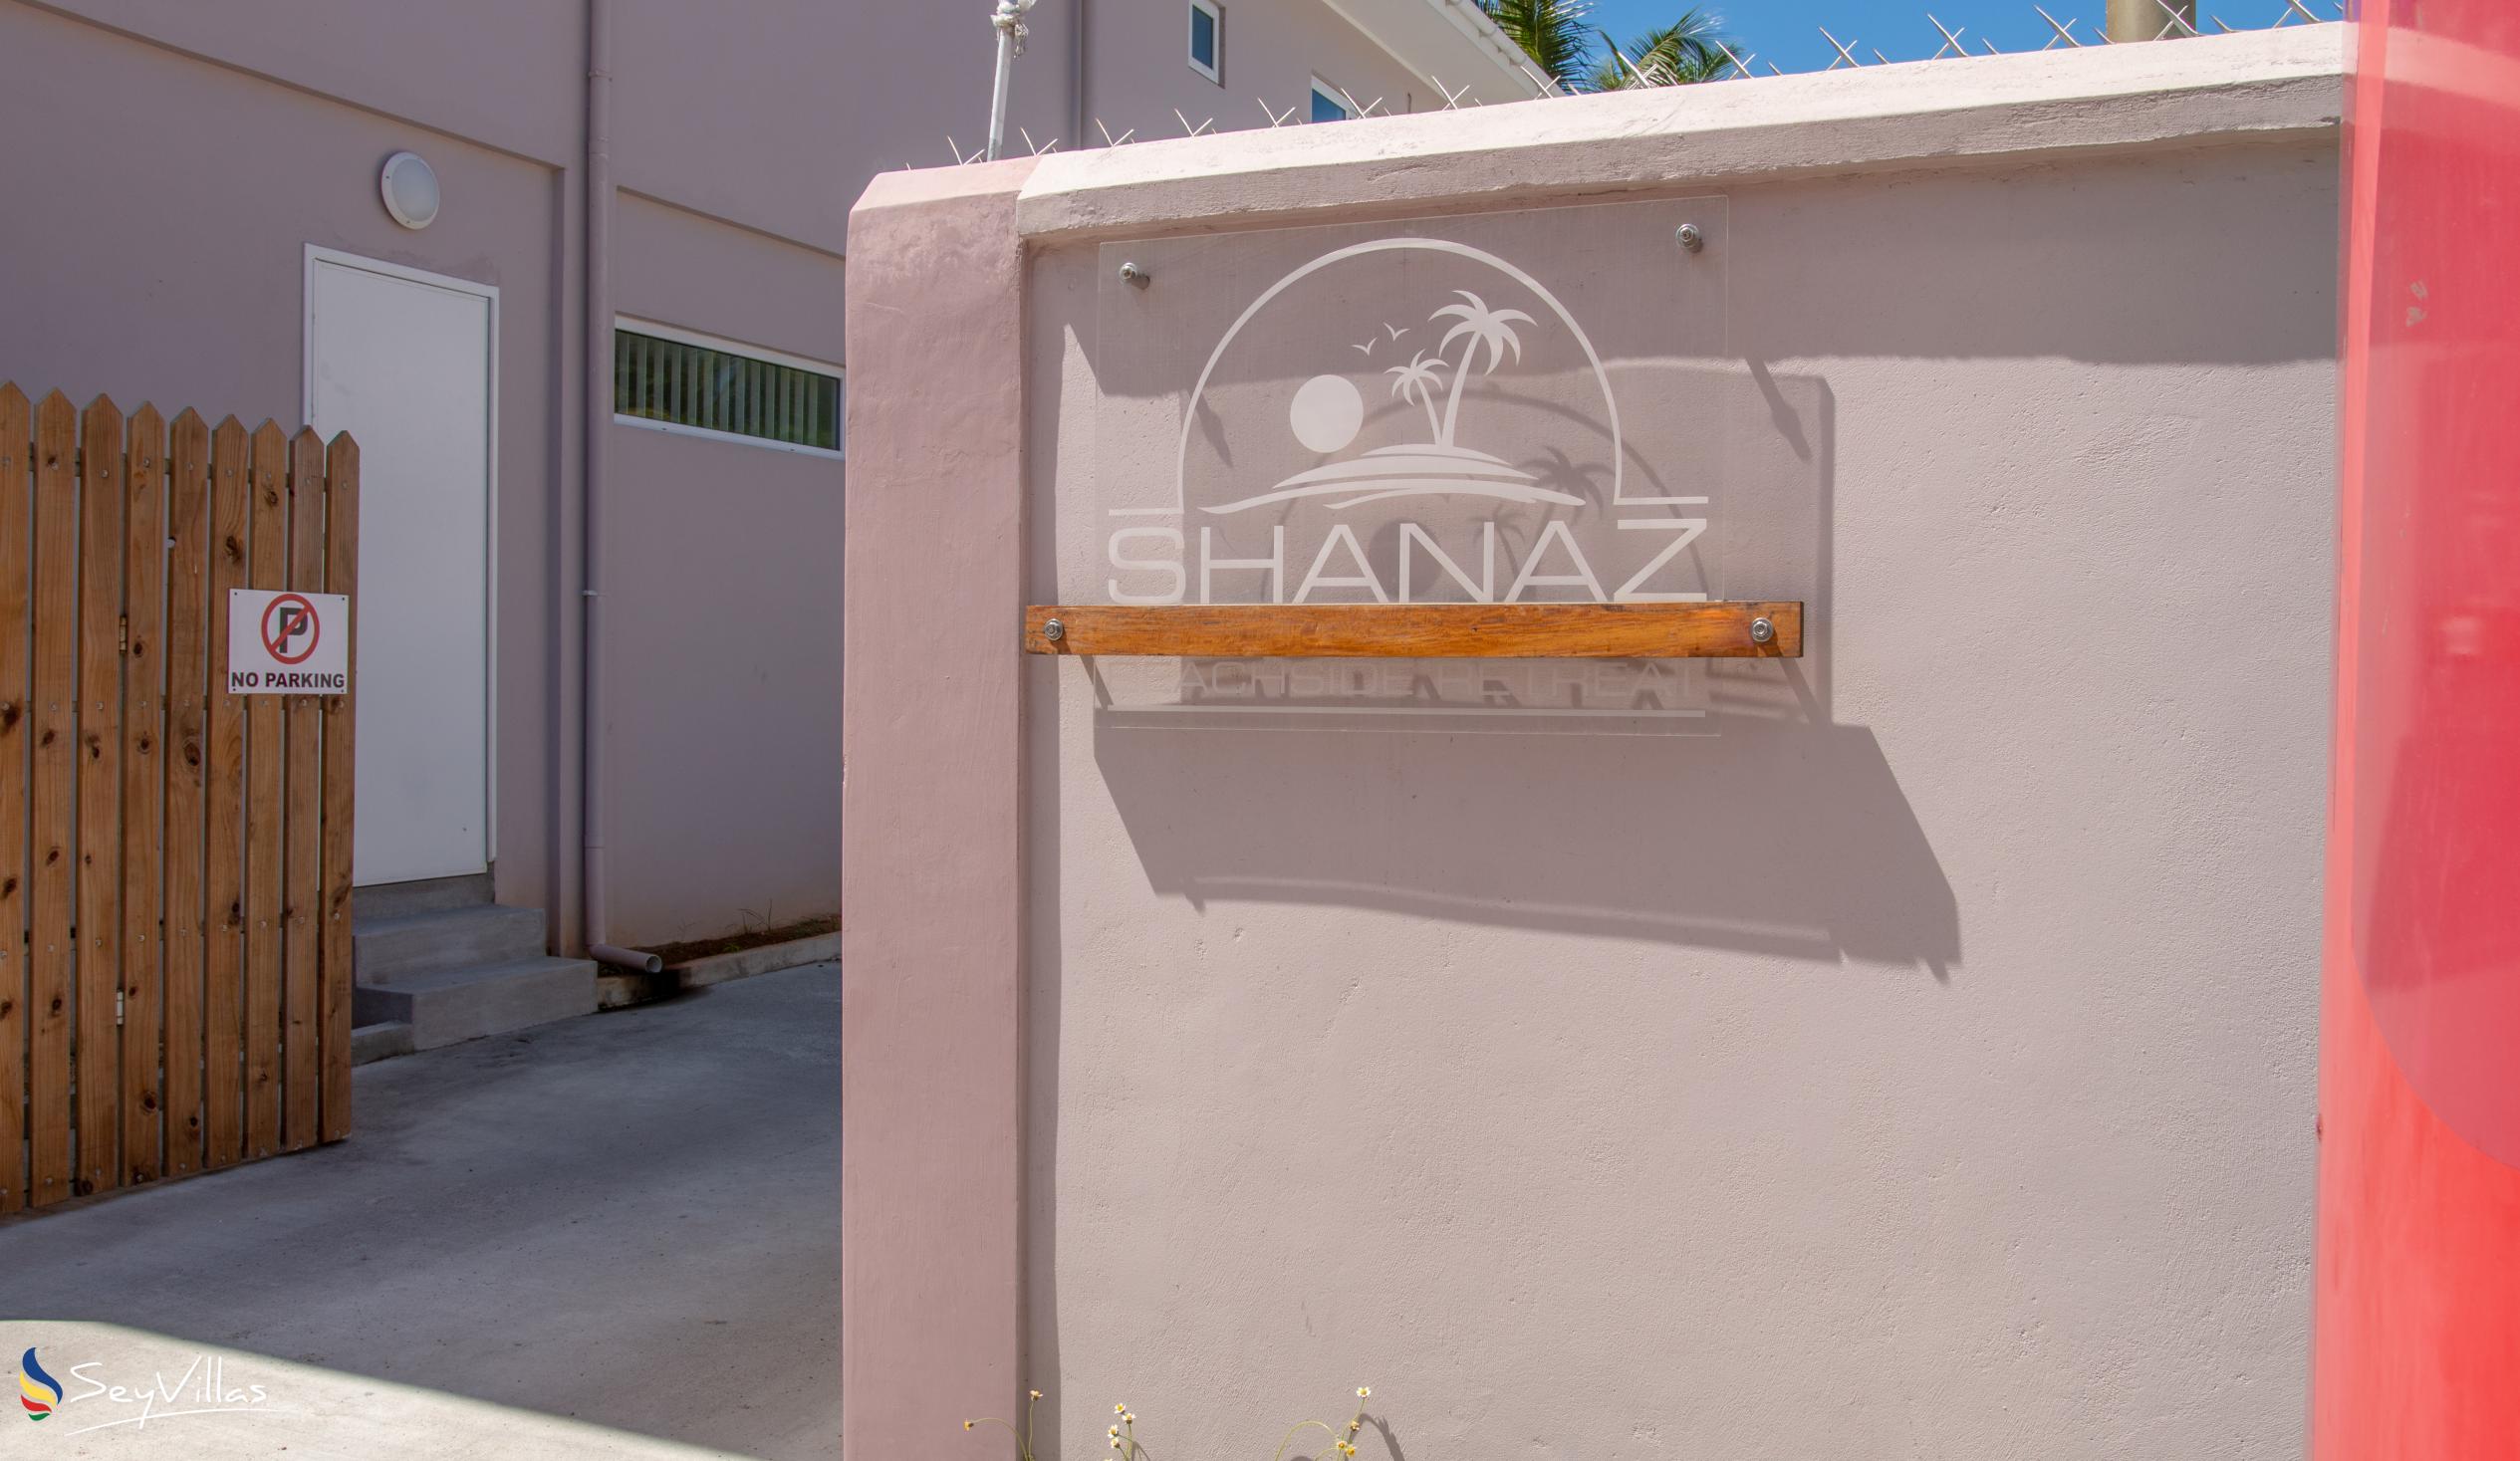 Foto 8: Shanaz Beachside Retreat - Aussenbereich - Mahé (Seychellen)